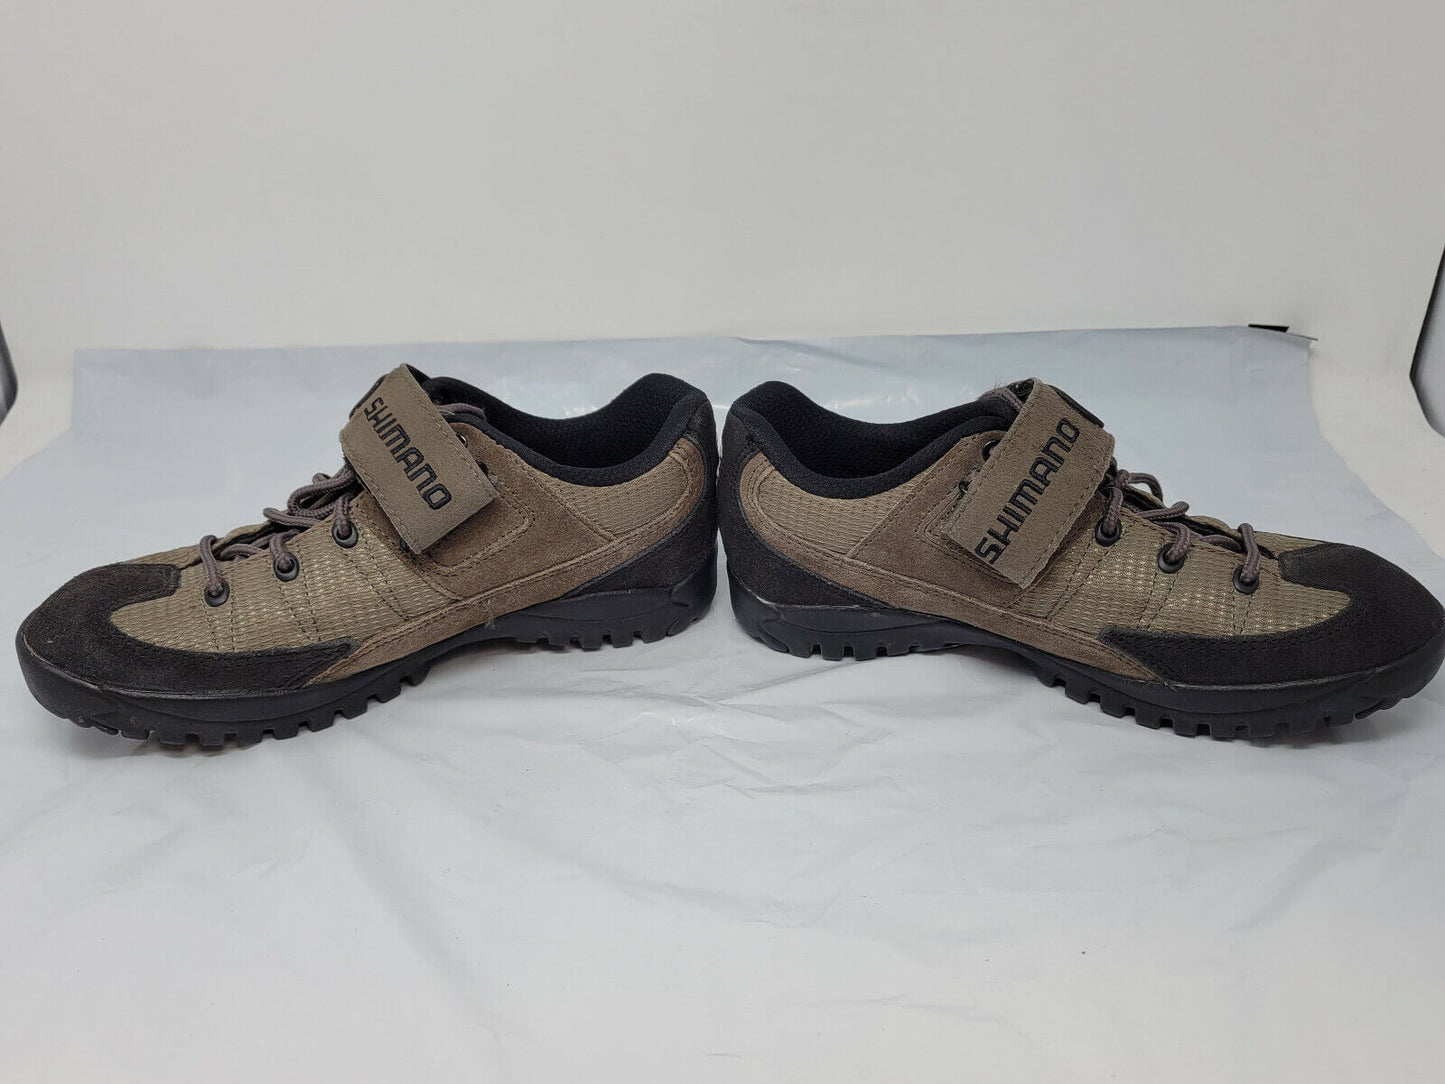 Shimano SH-M038W Women's Mountain Cycling Shoes Size US 5 - Pre-owned